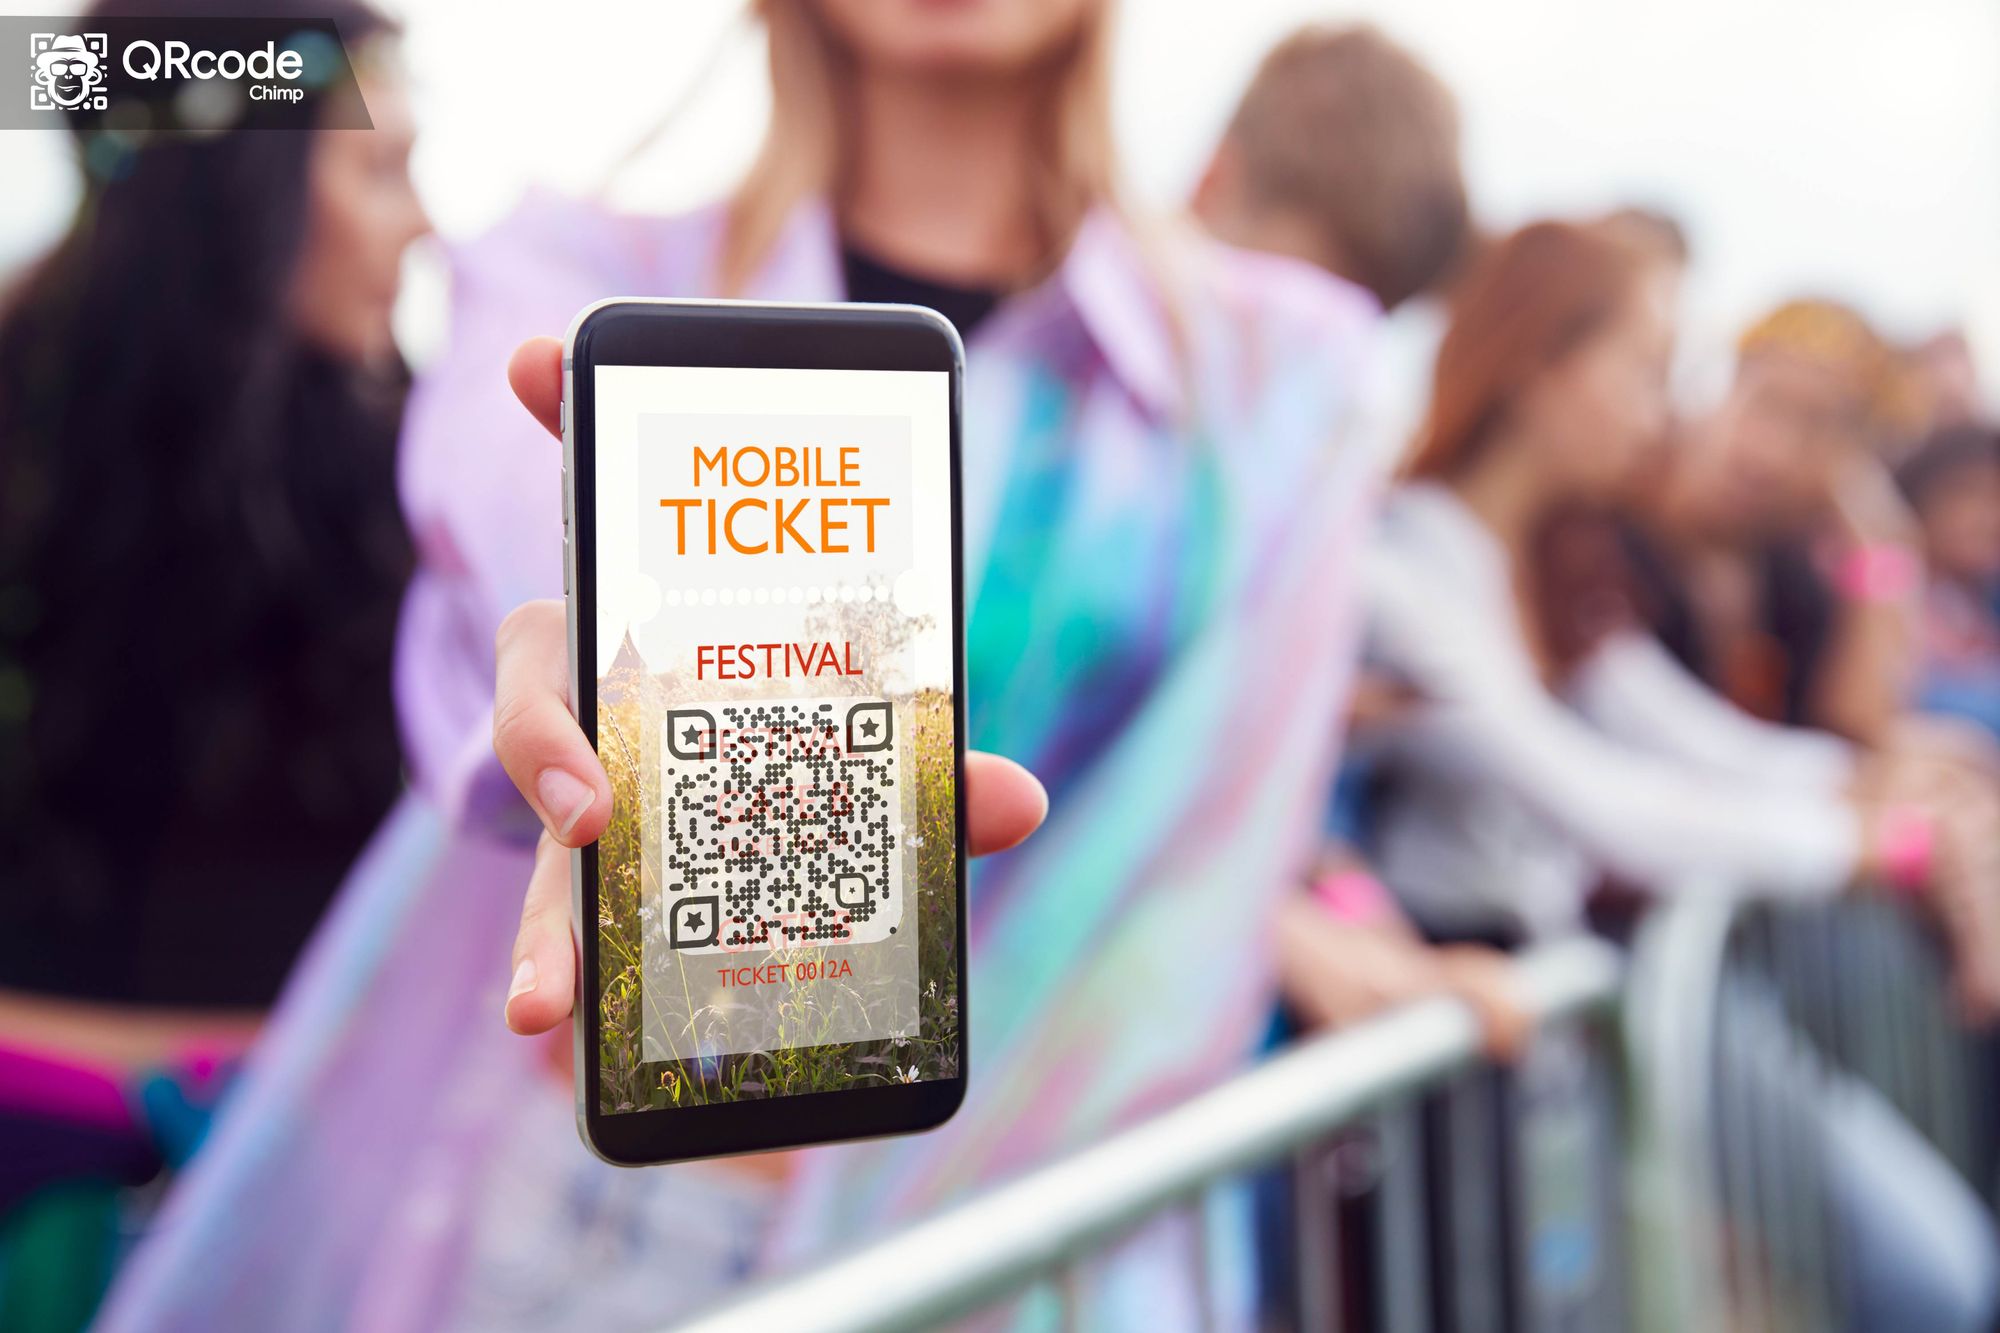 Digital Concert Ticket with QR Code